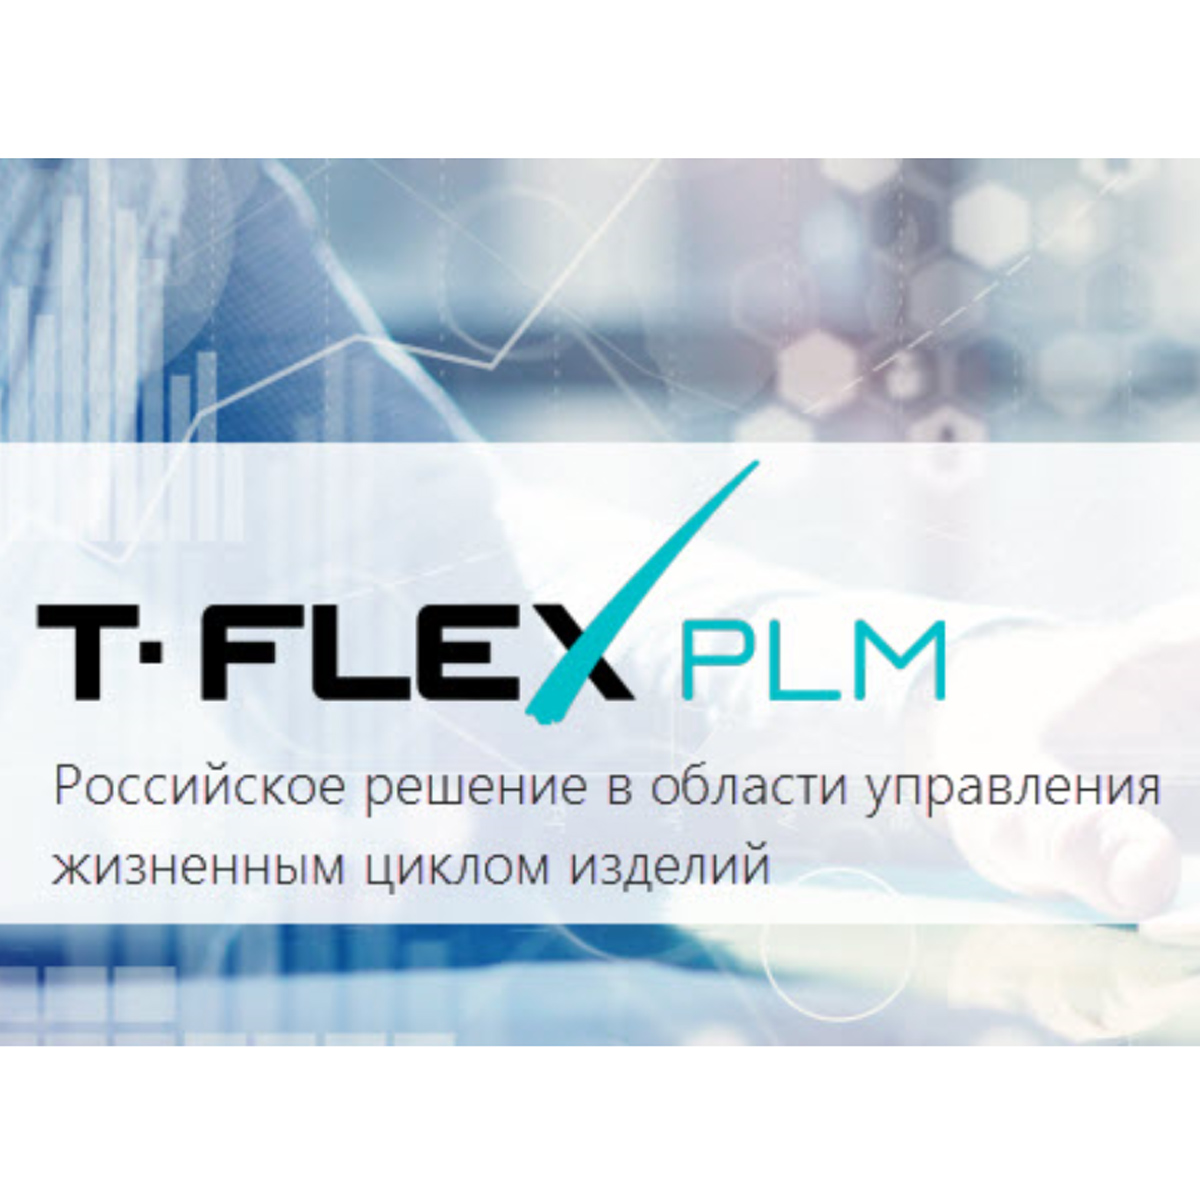 www.tflex.ru